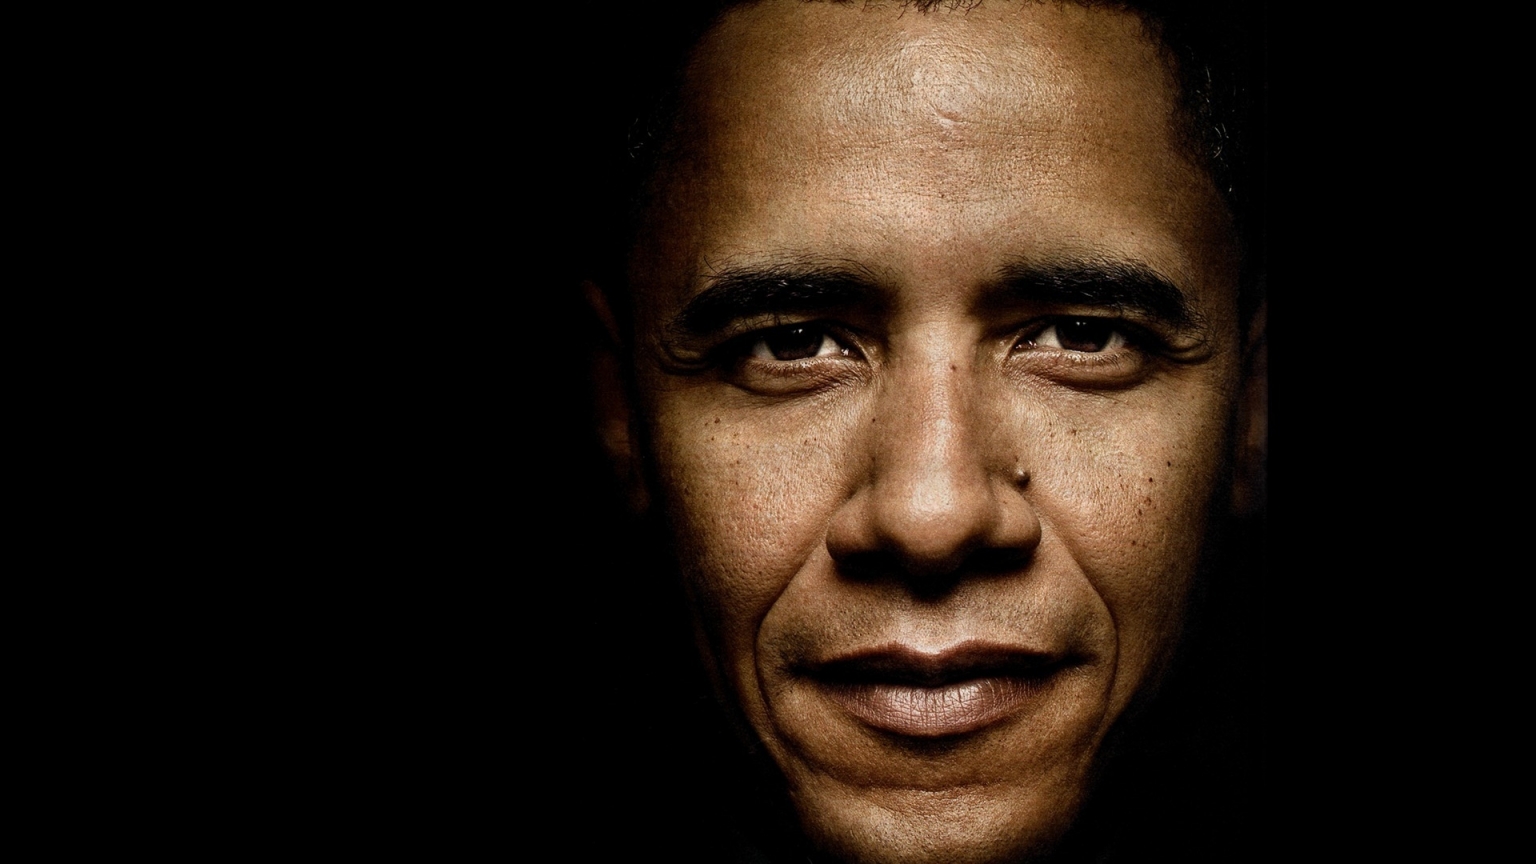 Barack Obama Close Up for 1536 x 864 HDTV resolution